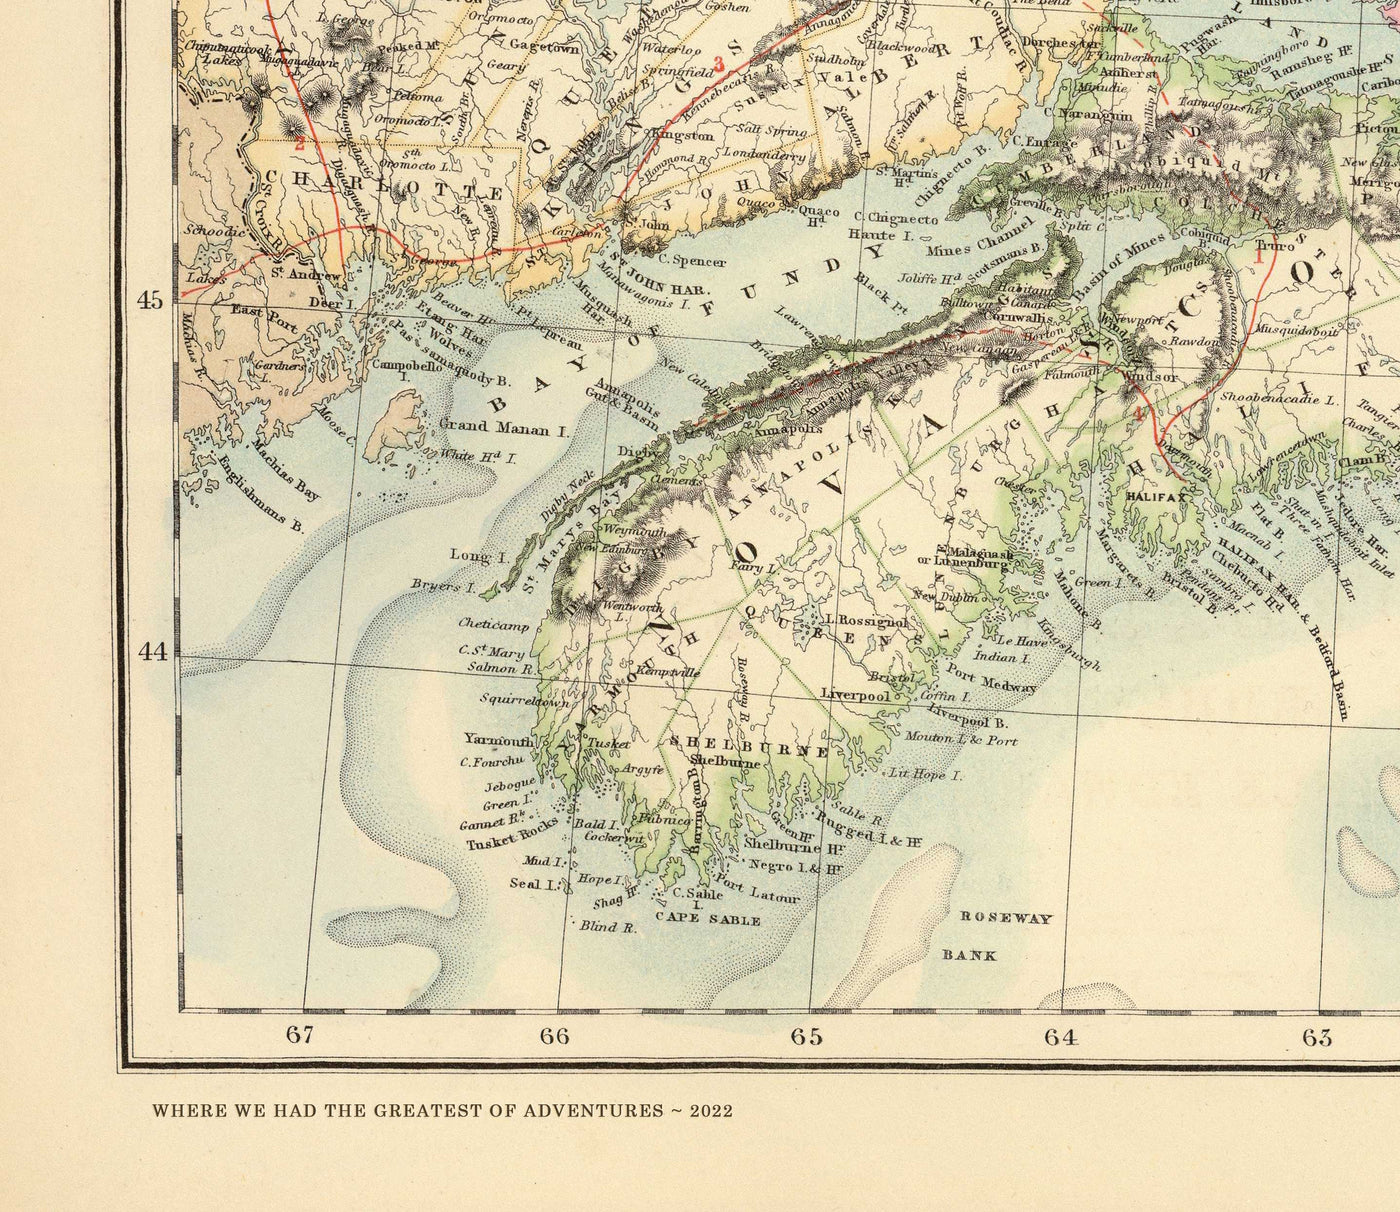 Alte Makrelenfischkarte der Nordsee, 1883 von O.T. Olsen - Makrelenfischerei, Verbreitung, Laichzeit, etc.